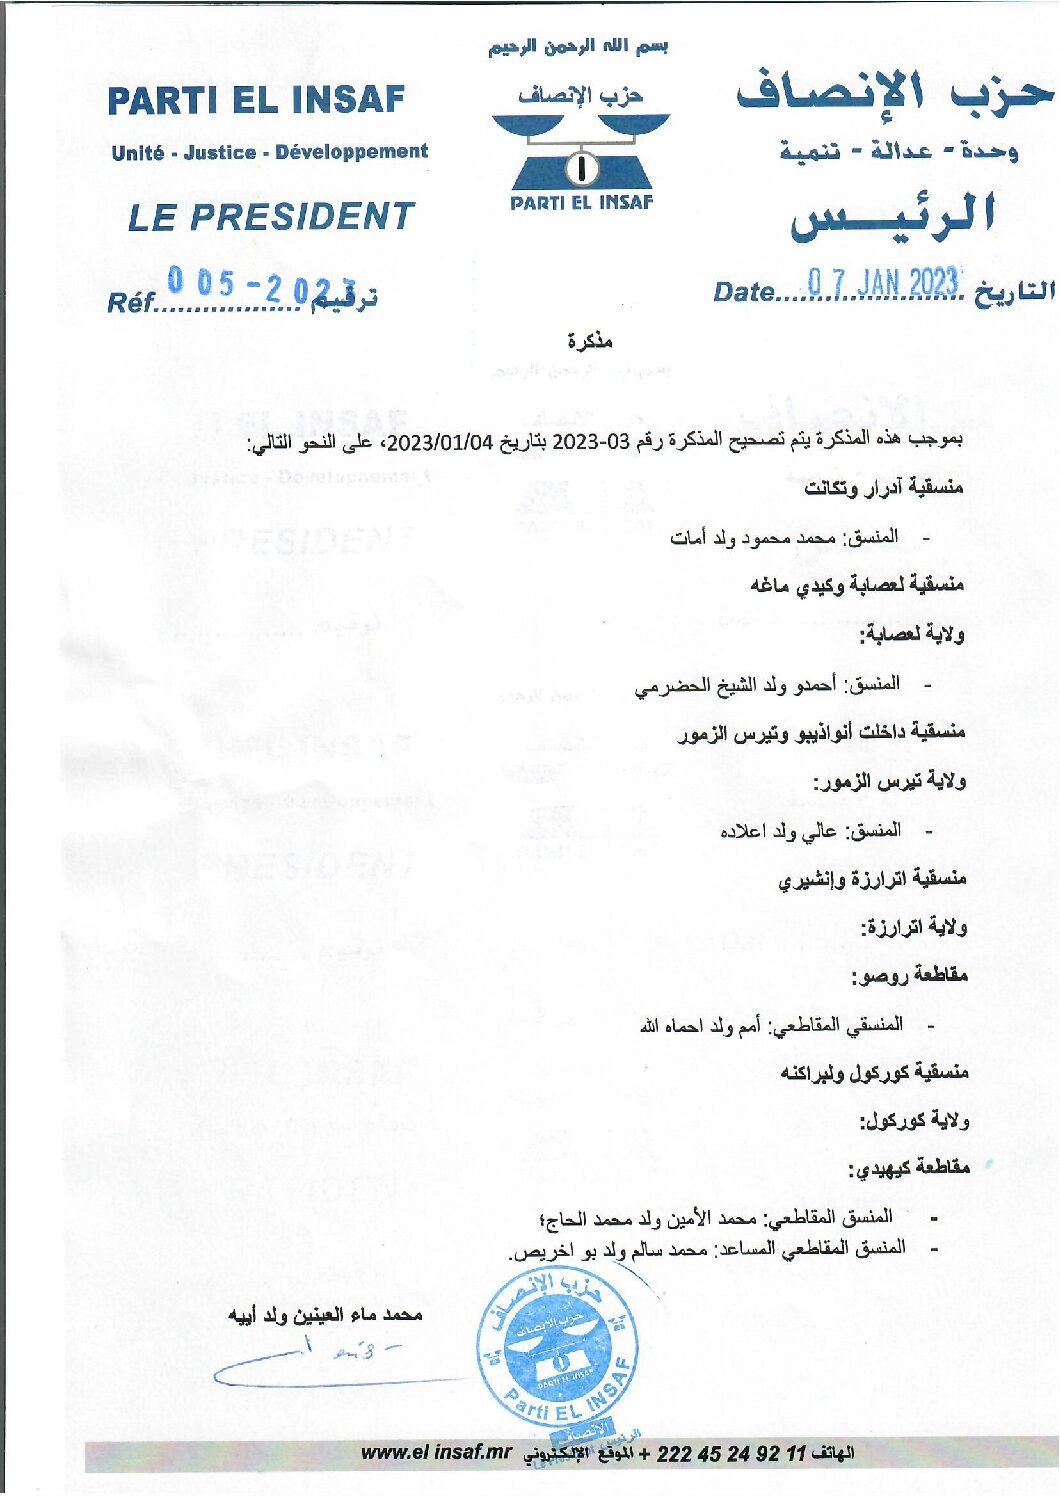 صورة رئيس الحزب يصدر مذكرة تصحيحية حول البعثات المكلفة بالتحضير لانتخابات 2023